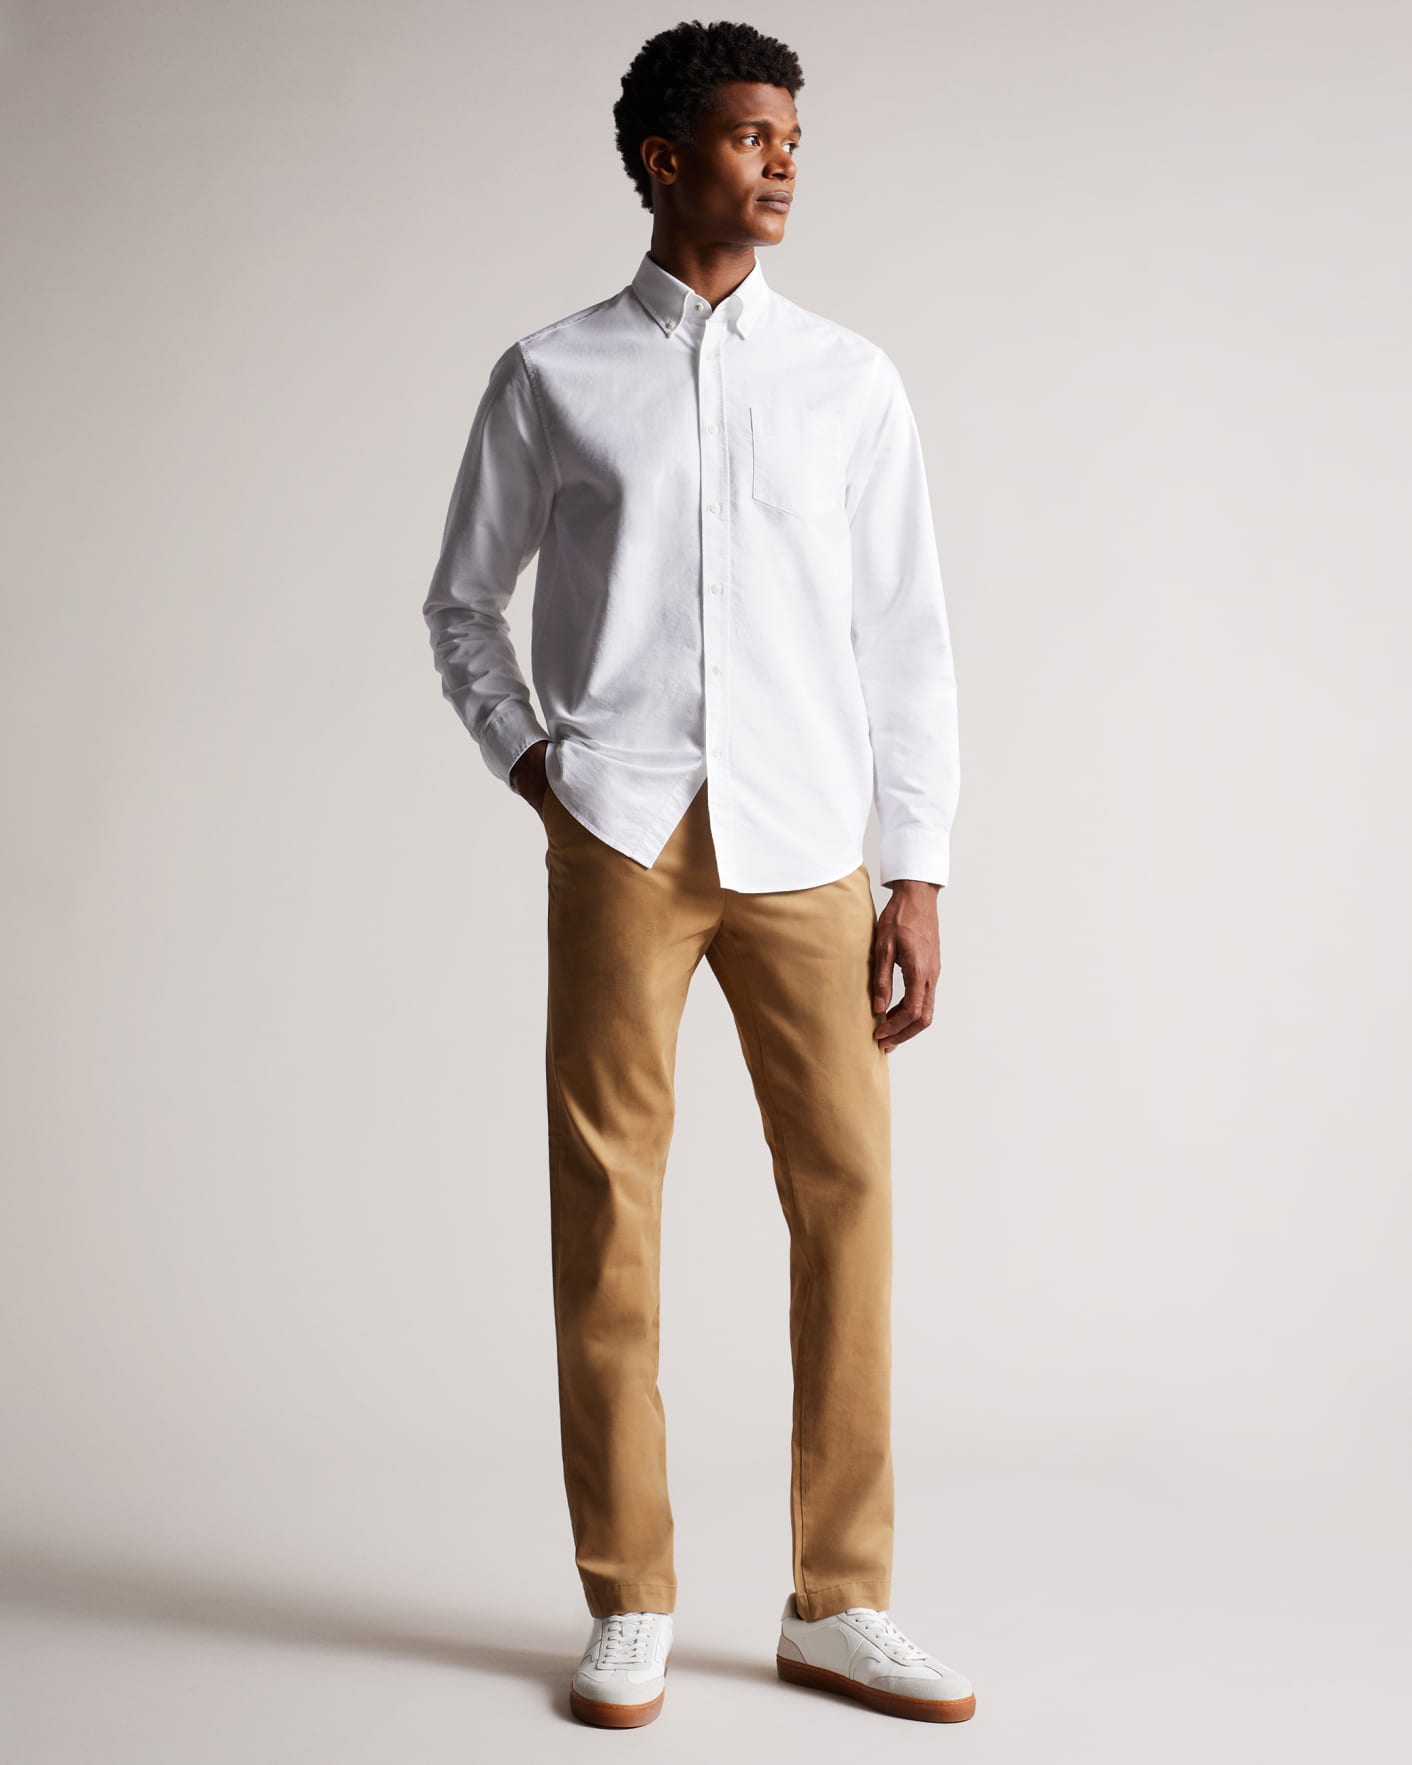 White Long Sleeve Oxford Shirt Ted Baker